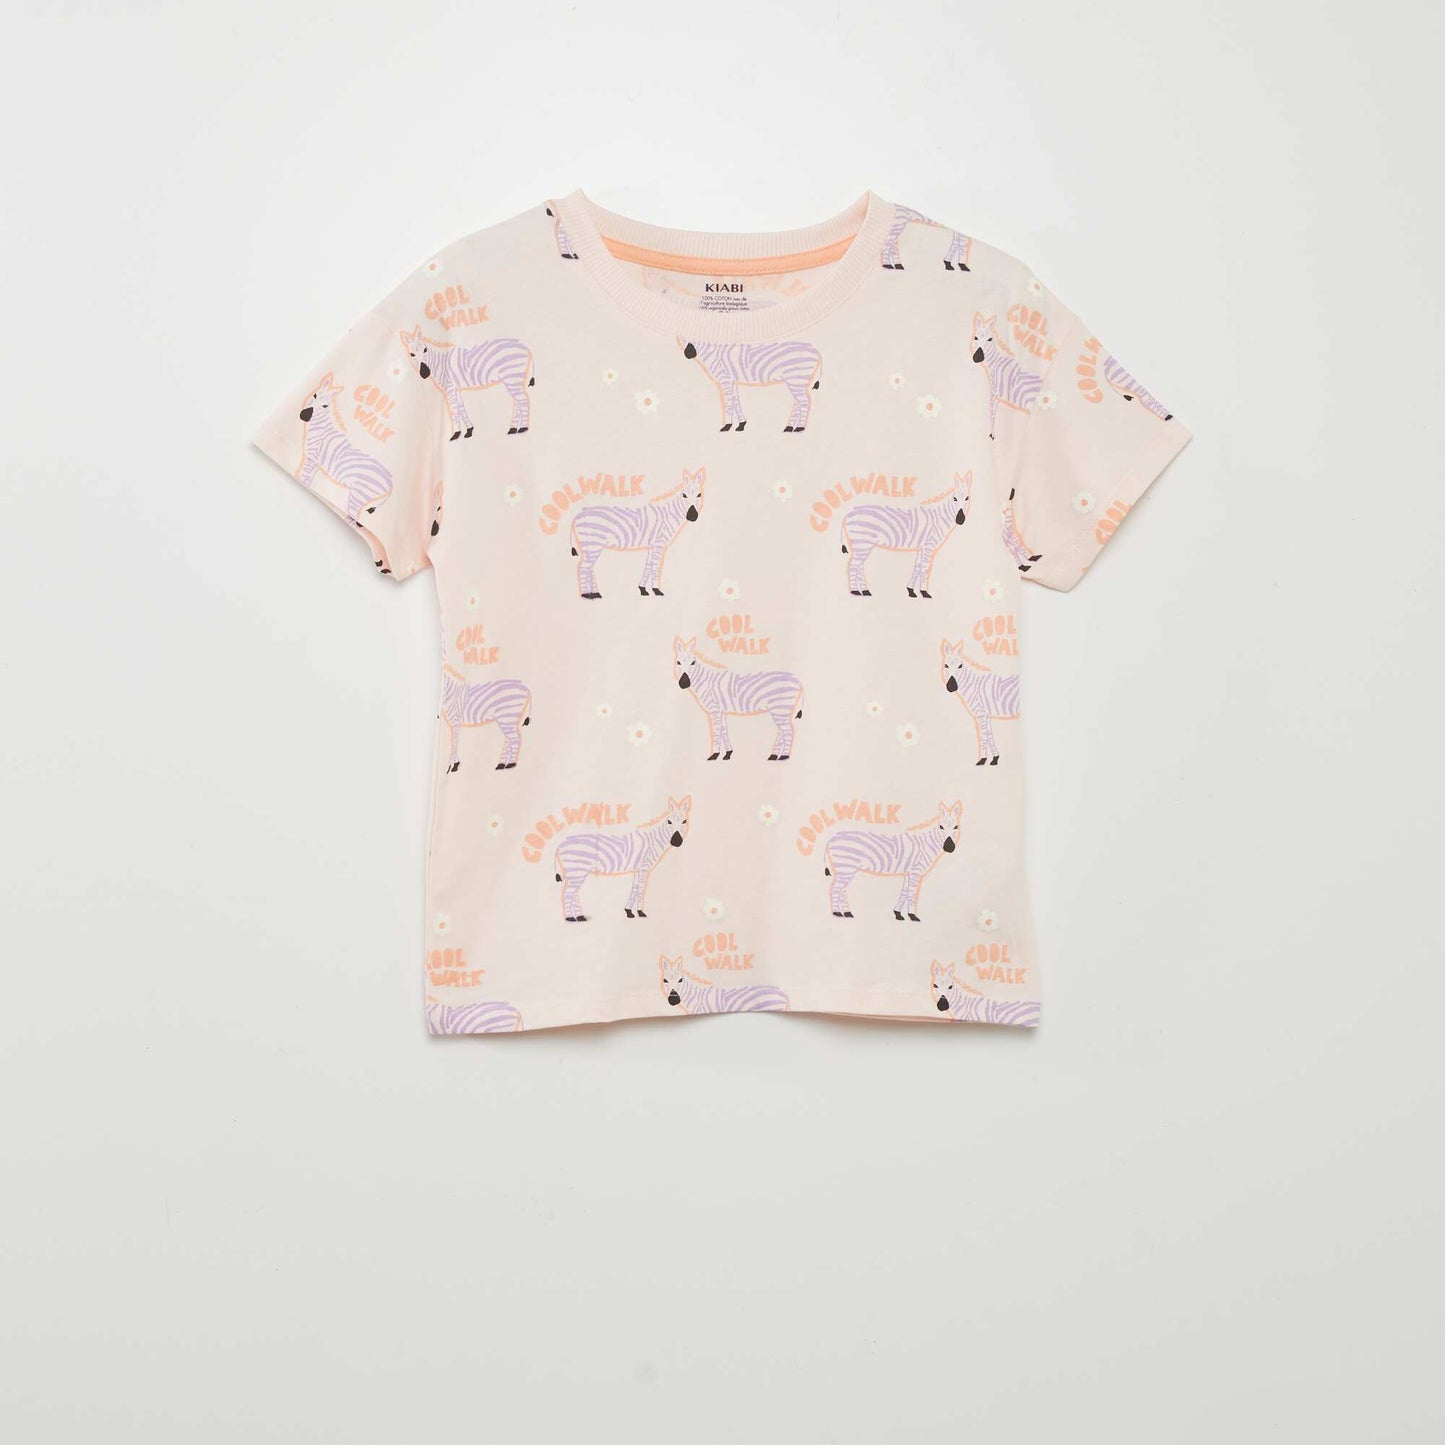 Ensemble de pyjama imprimé : T-shirt + short - 2 pièces Orange